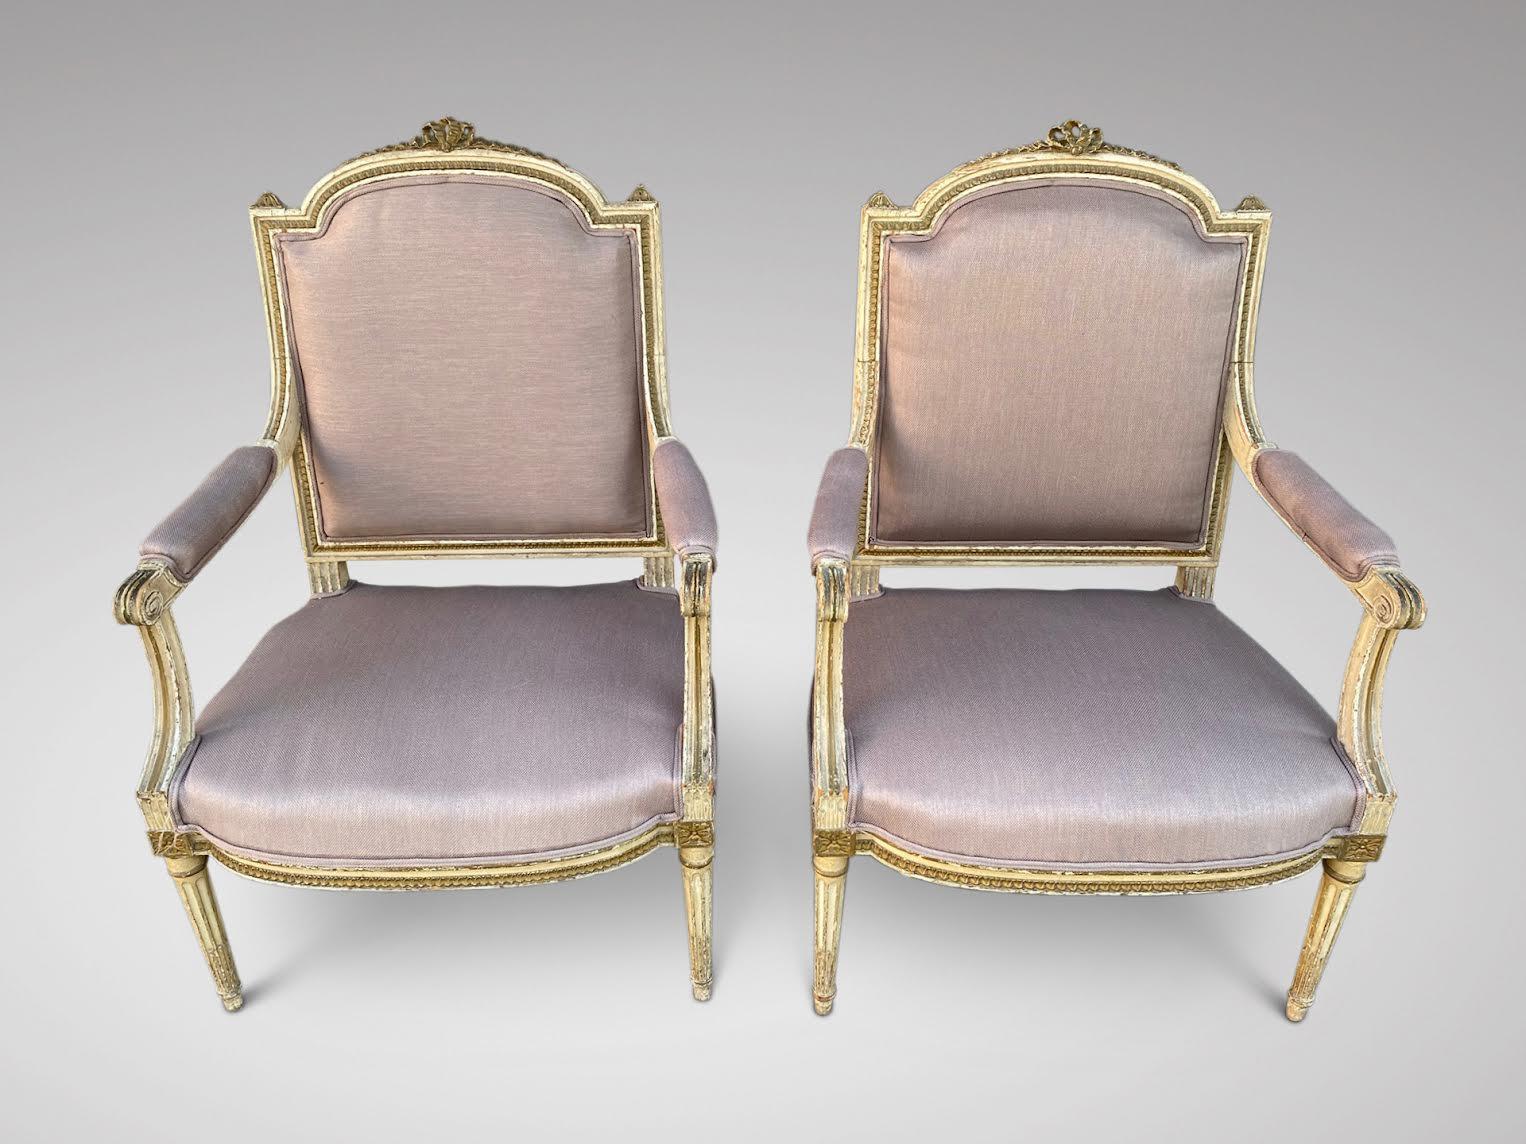 Français Paire de fauteuils Louis XVI français du 19ème siècle, tapissés et sculptés en vente